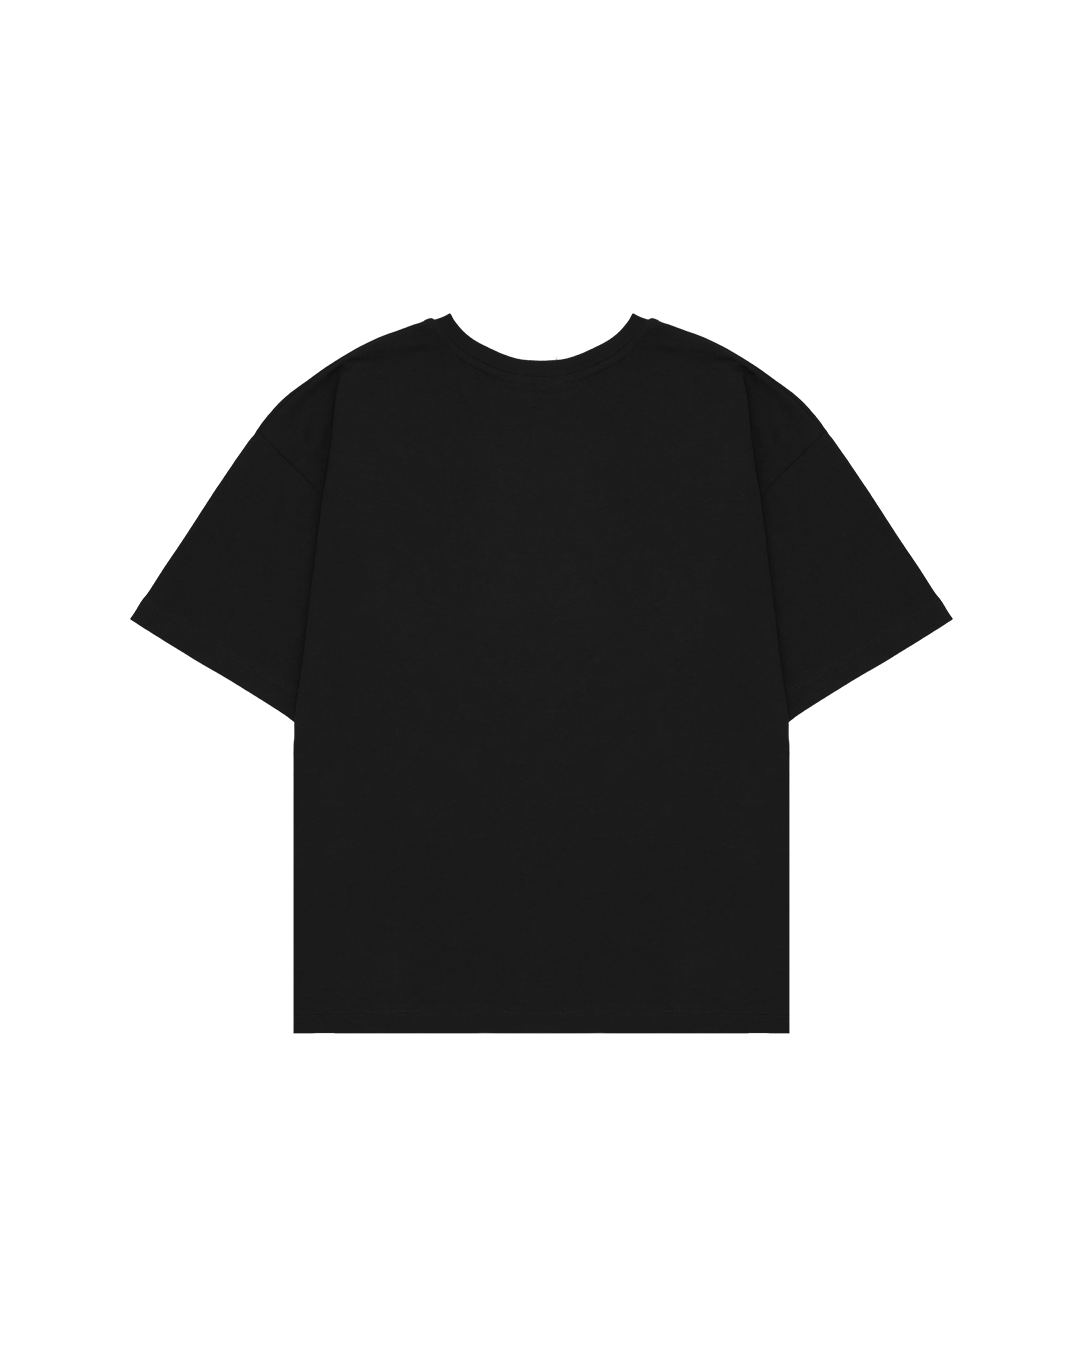 QCDU.2 Black T-Shirt